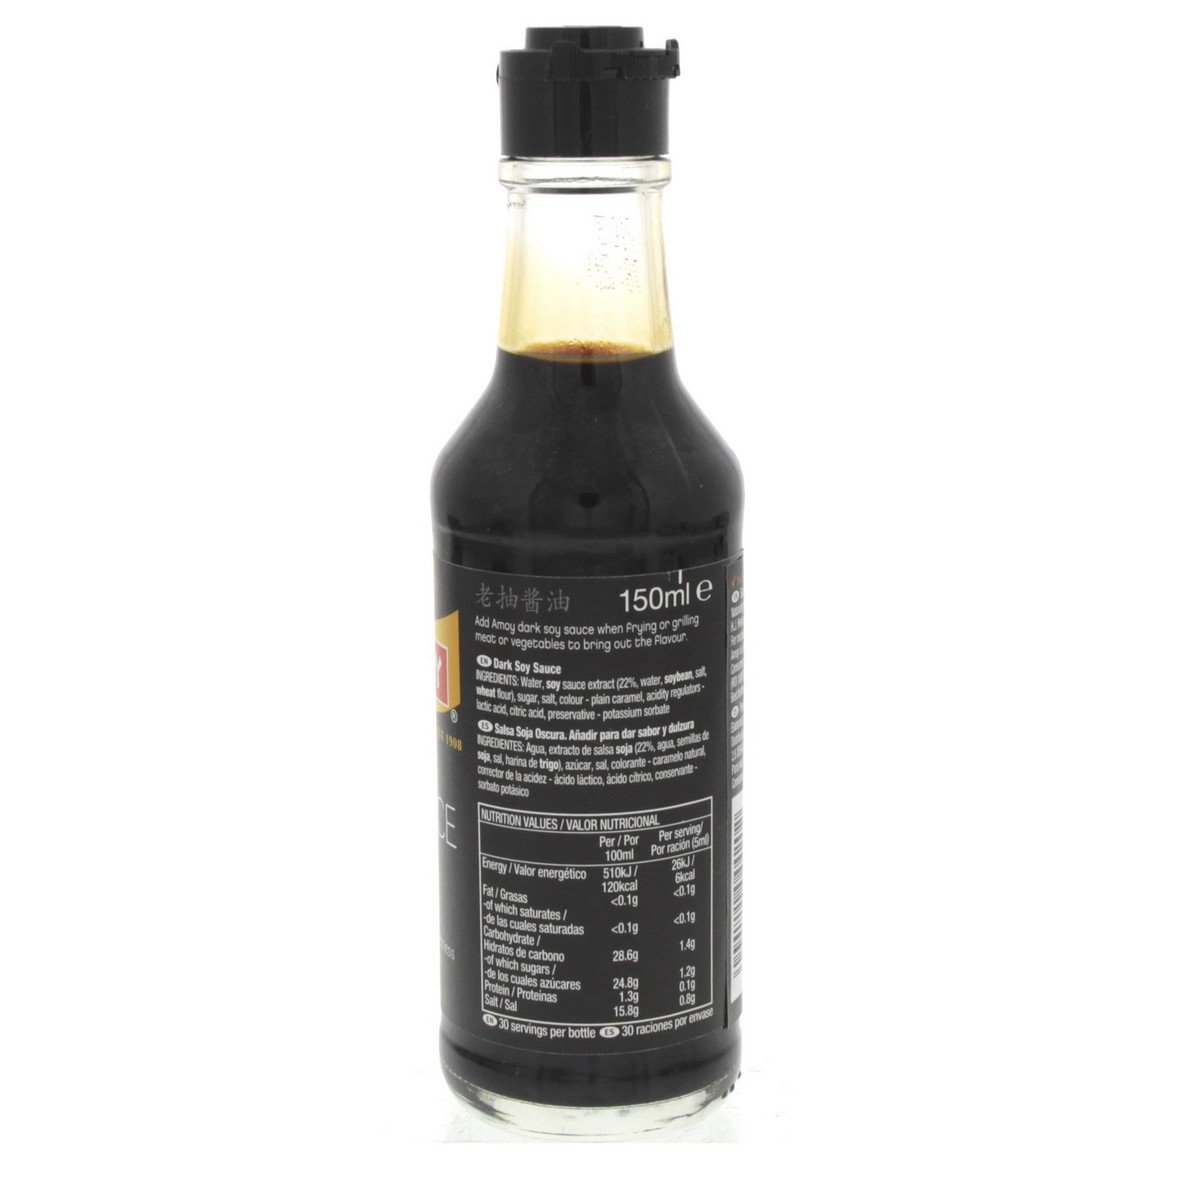 Amoy Dark Soy Sauce 150 ml